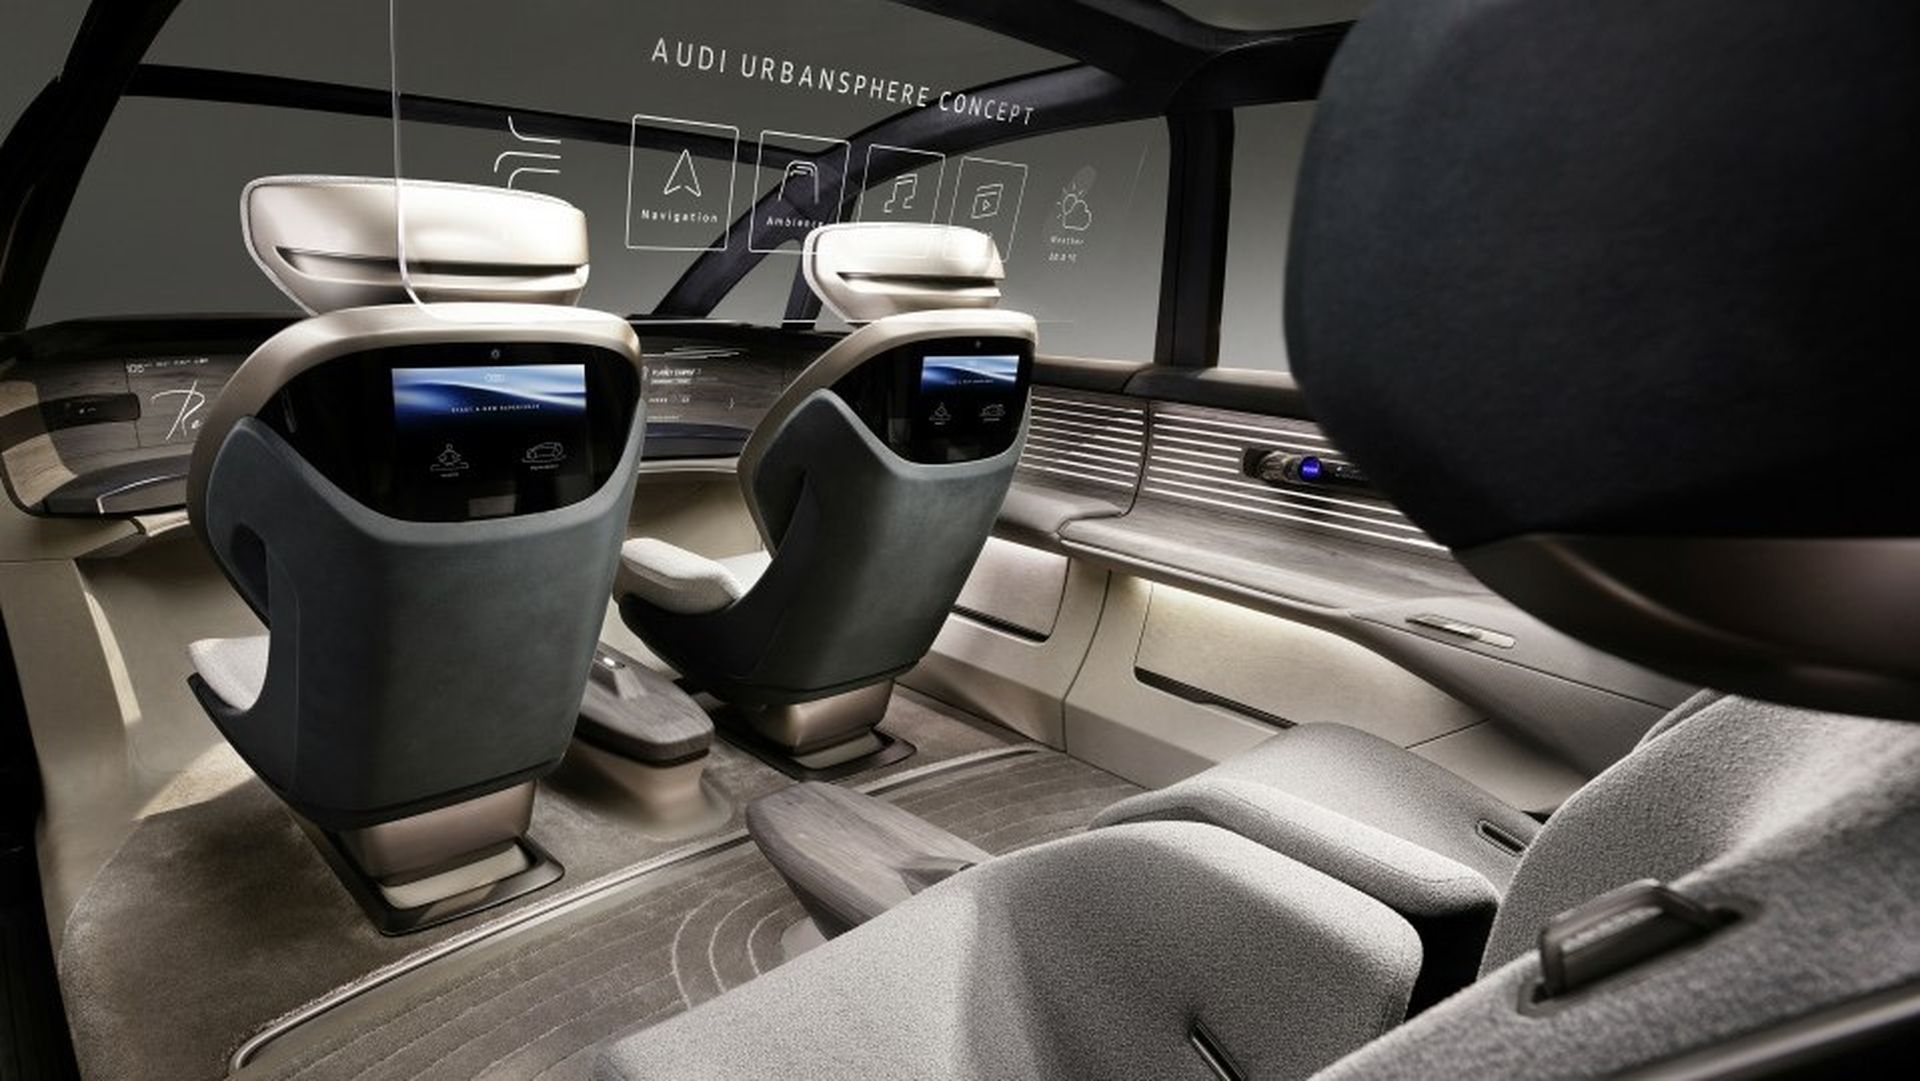 Audi urbansphere (interior)